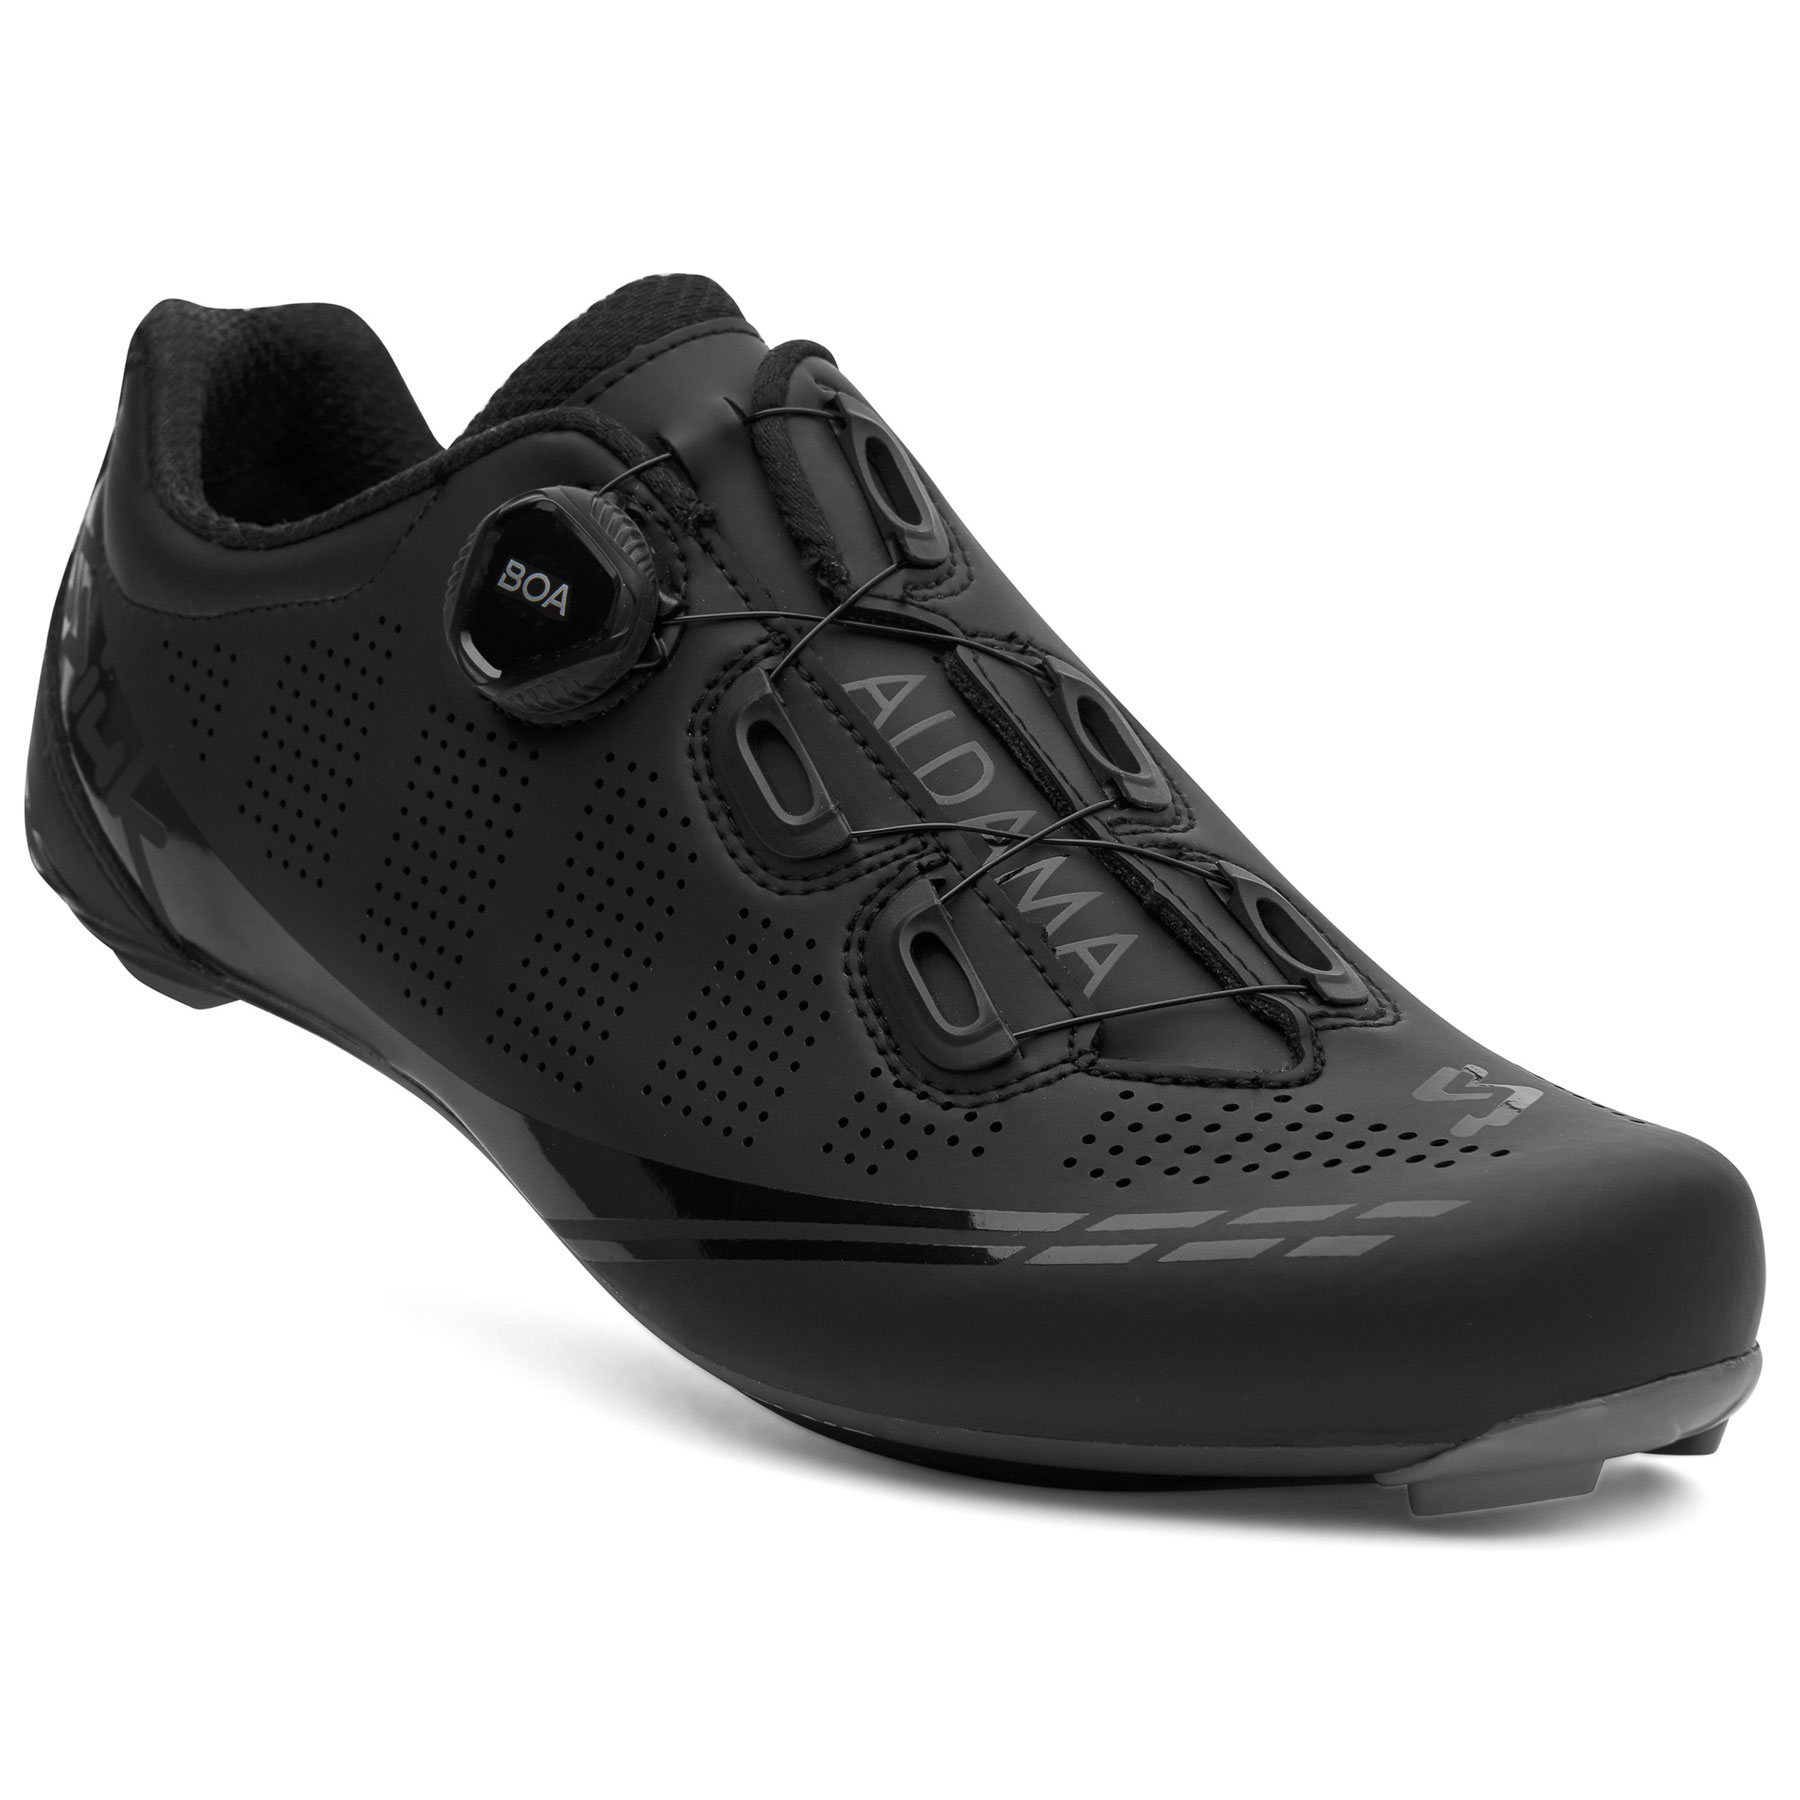 Produktbild von Spiuk Aldama Carbon Rennradschuhe Herren - schwarz matt